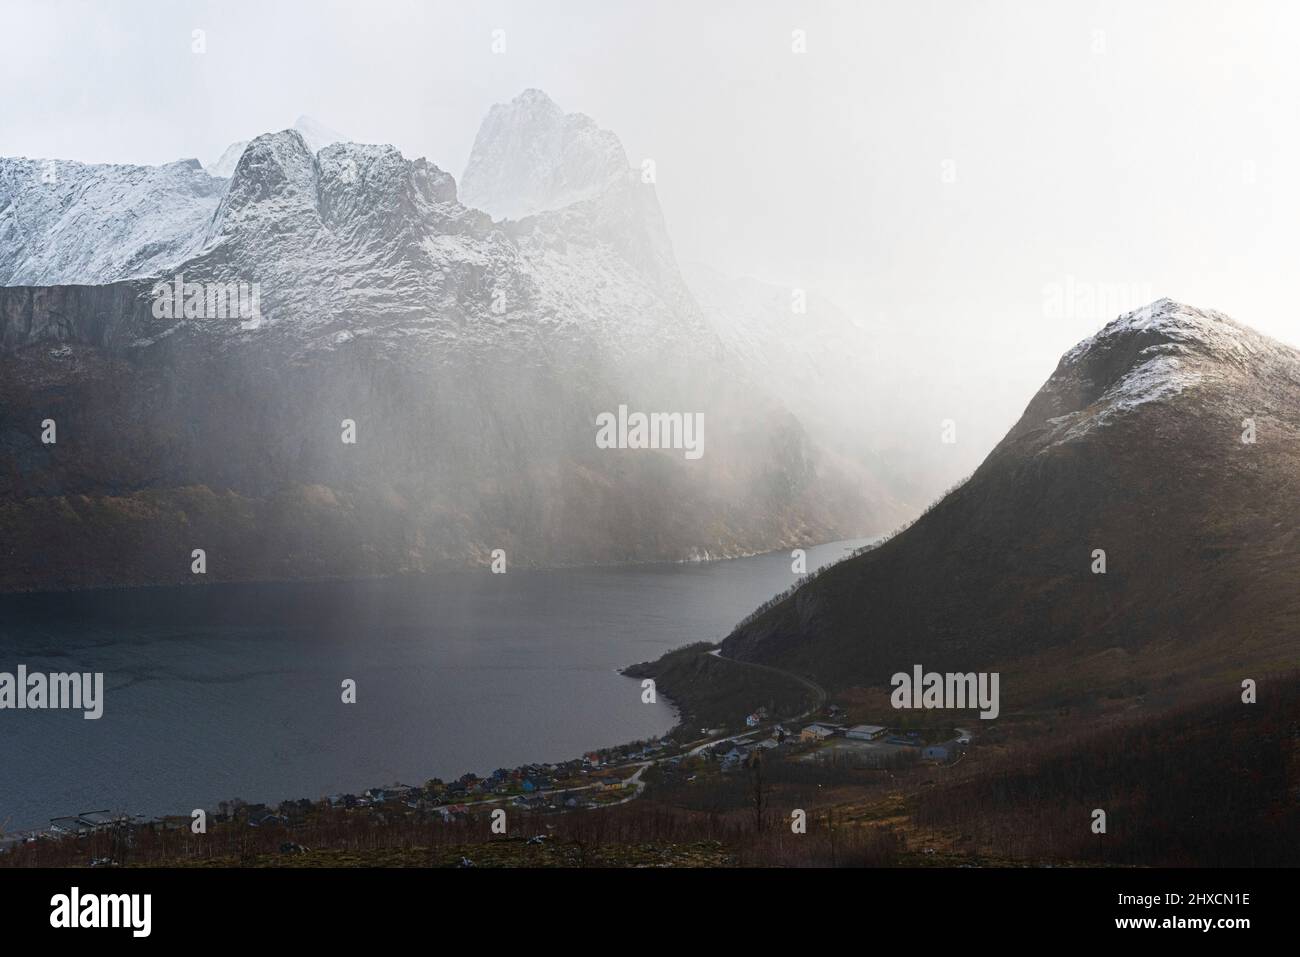 Impressioni autunnali dall'isola norvegese Senja sopra il Circolo polare Artico, Scandinavia pura e Norvegia, escursione a Hesten per la vista mozzafiato della montagna Segla 639 m e fiordi circostanti, Foto Stock